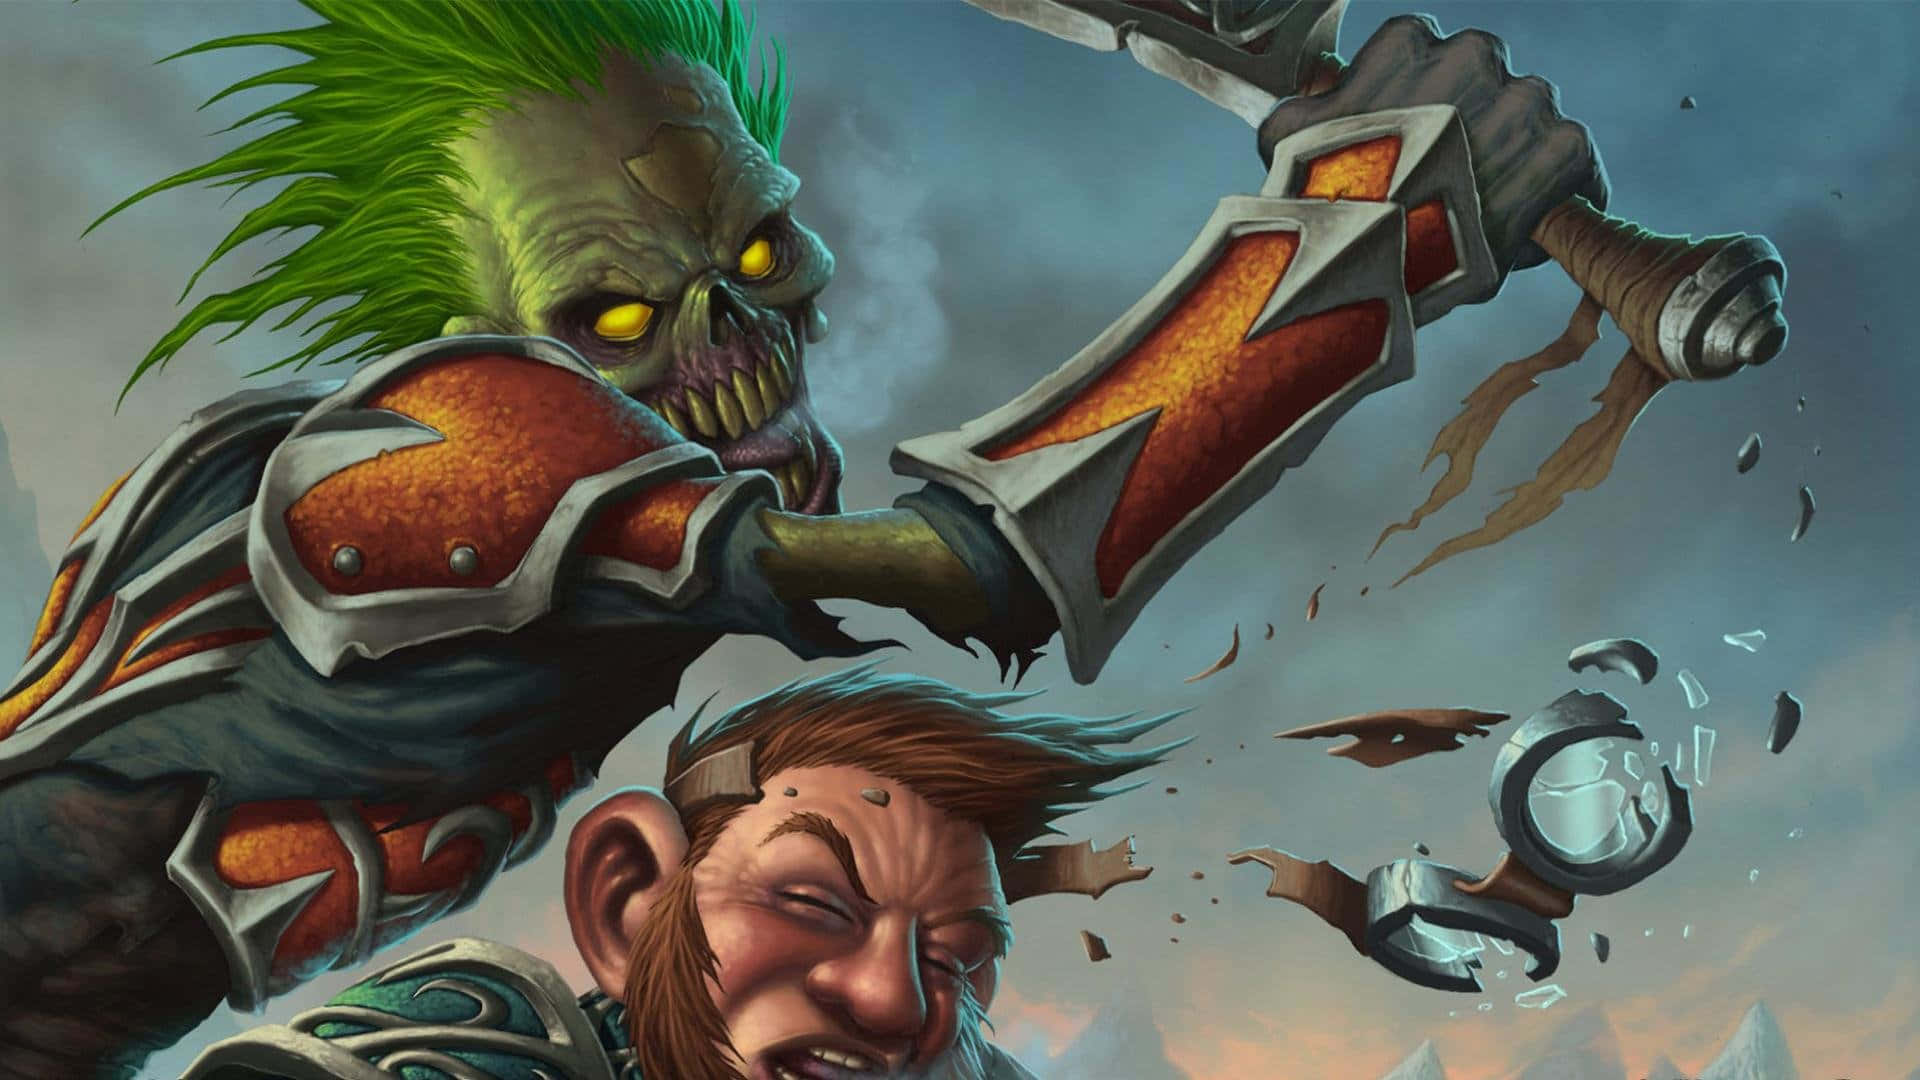 Gåbland Skuggorna I World Of Warcraft. Wallpaper